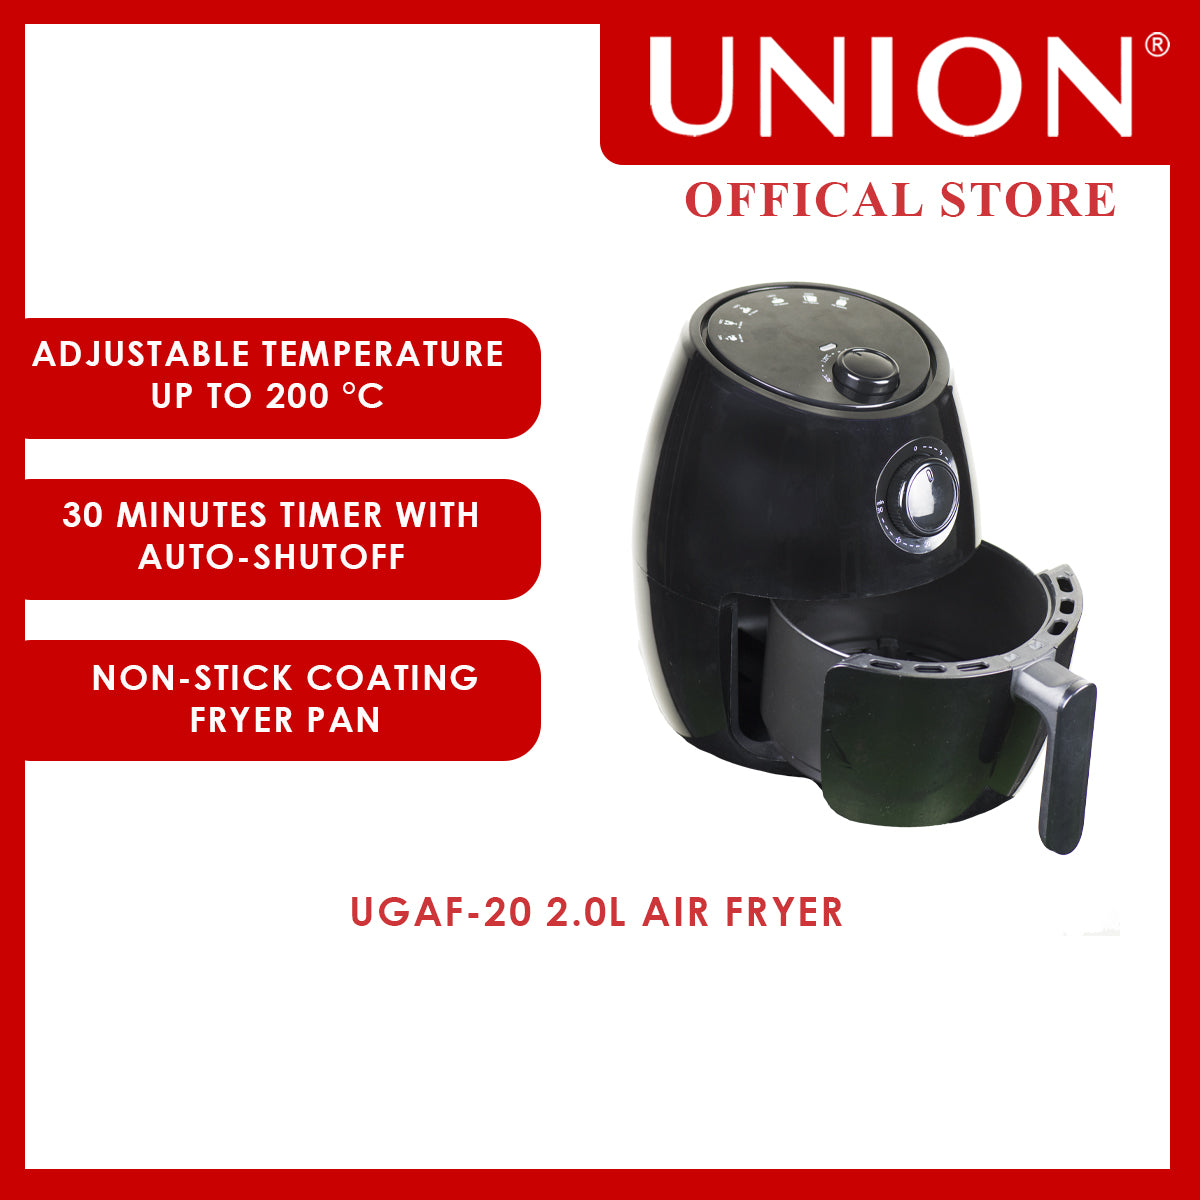 Union® 2.0L Air Fryer